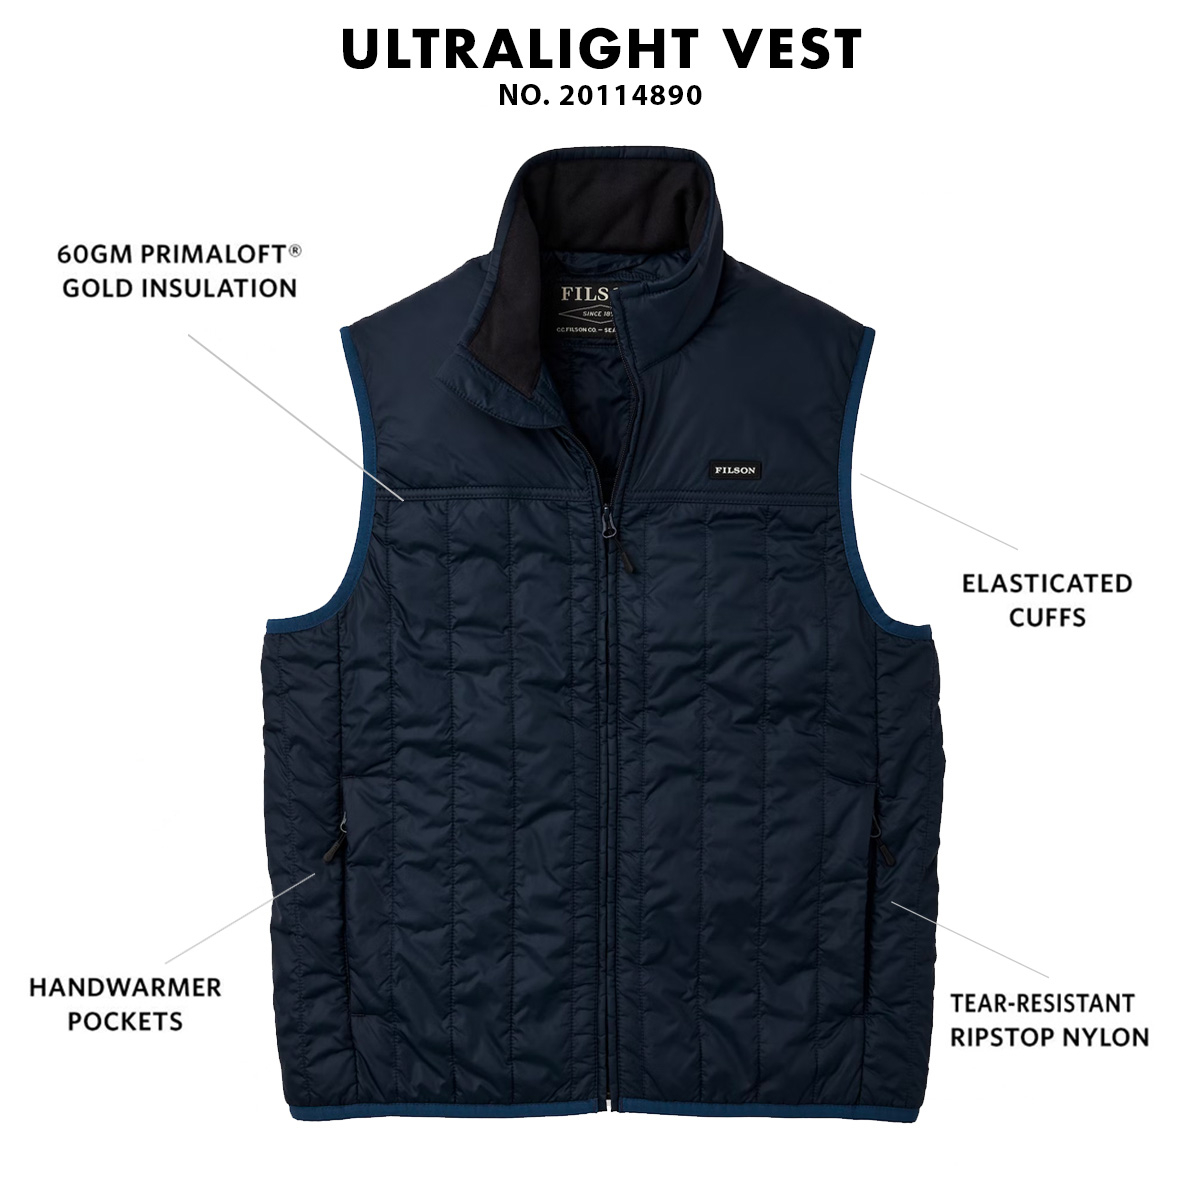 Filson Ultralight Vest Blue Coal, perfekt als Außenhülle oder unter einer dicken Jacke geeignet und sorgt für Wärme bei extremer Kälte